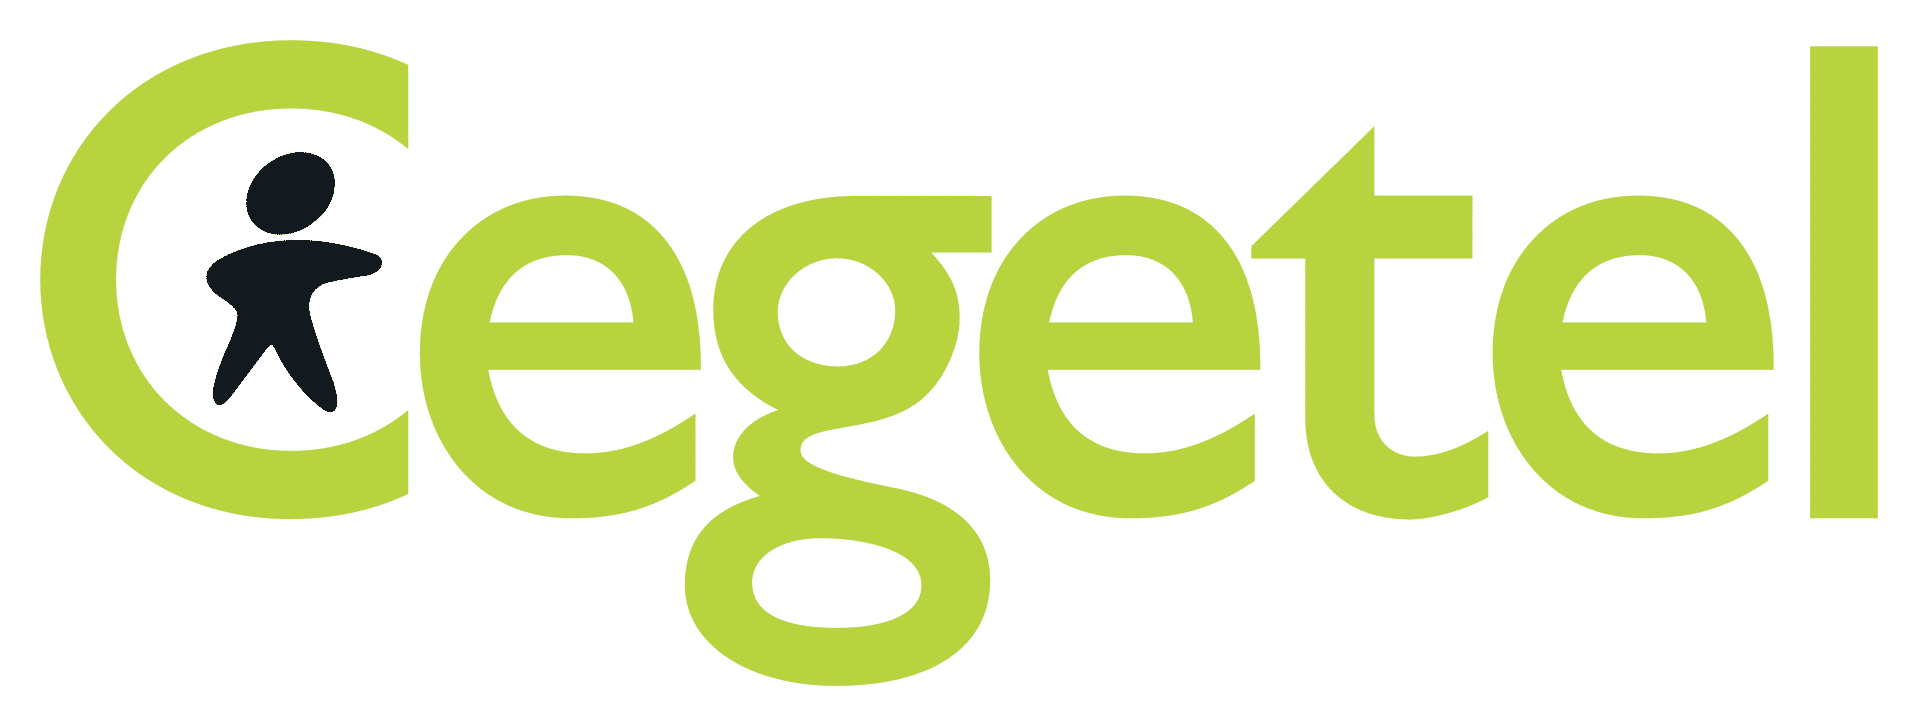 Logo Cegetel